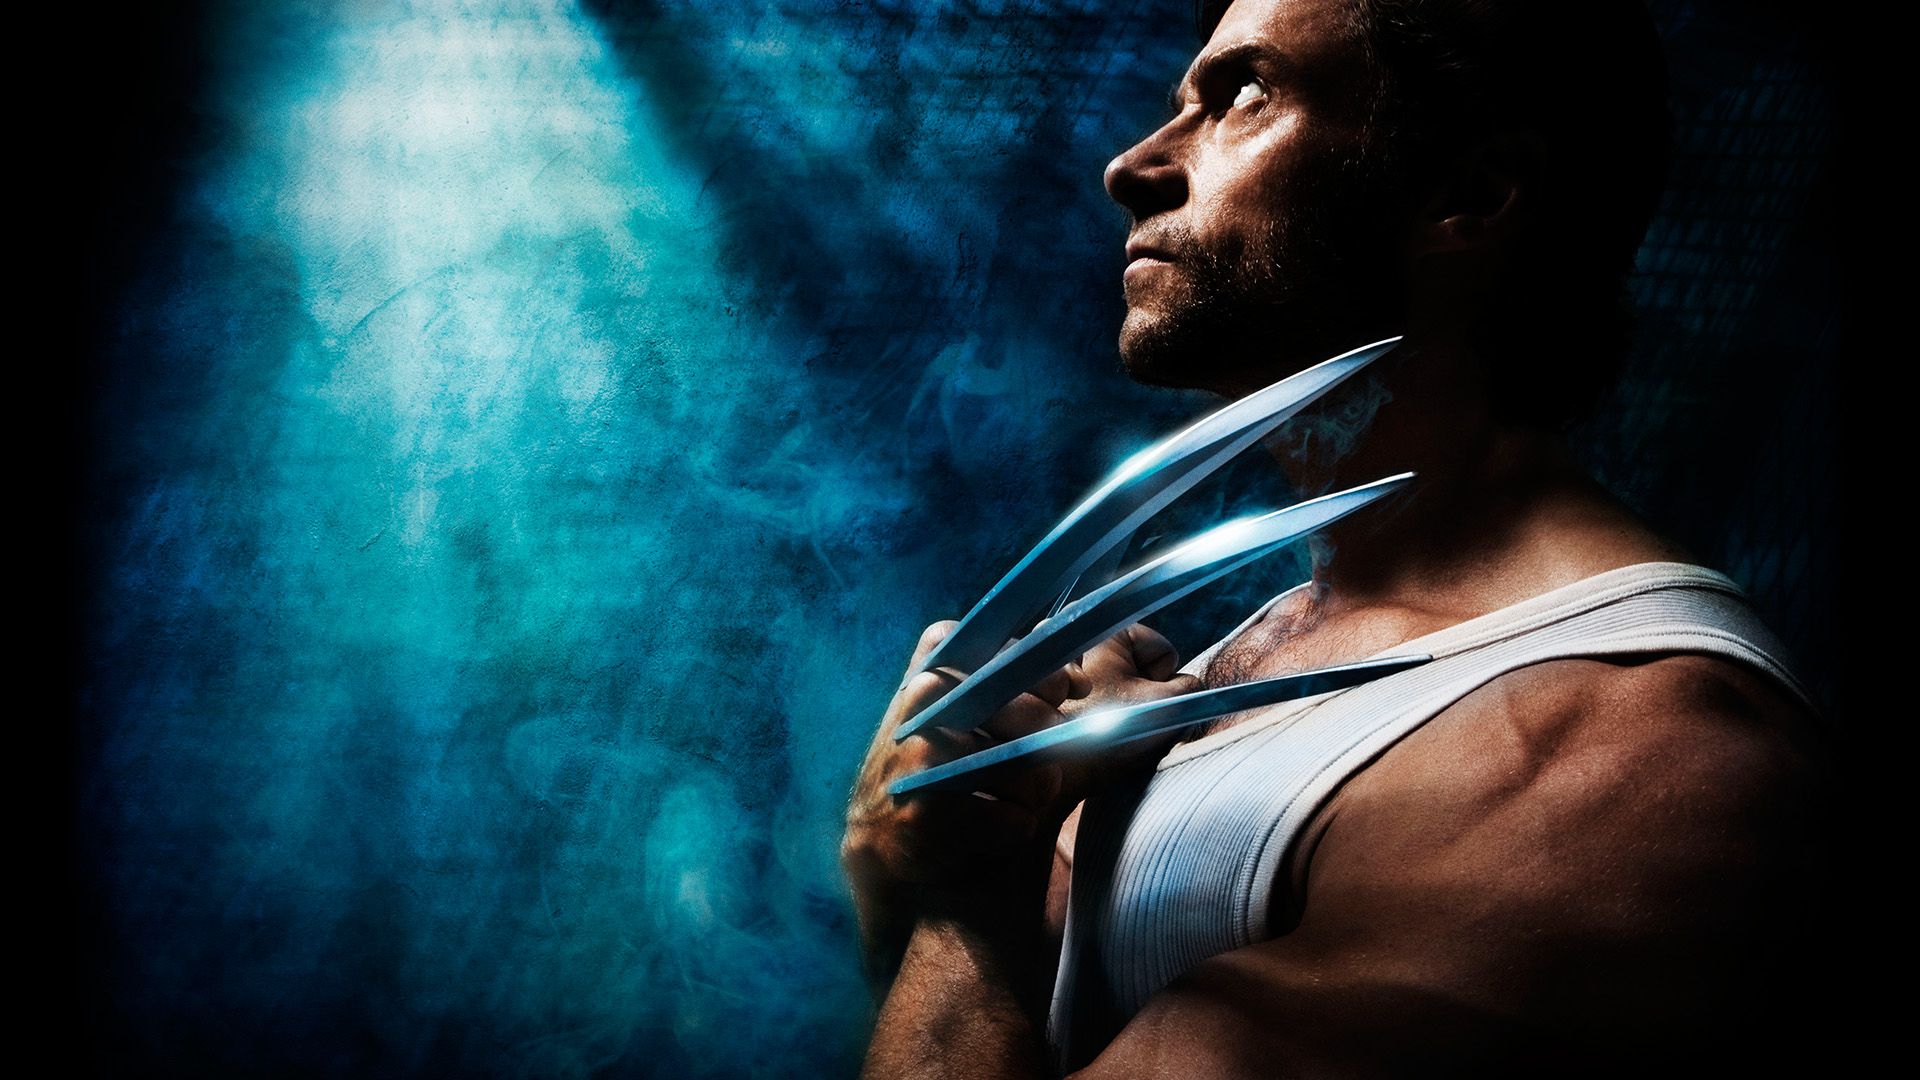 X-Men Origins: Wolverine background